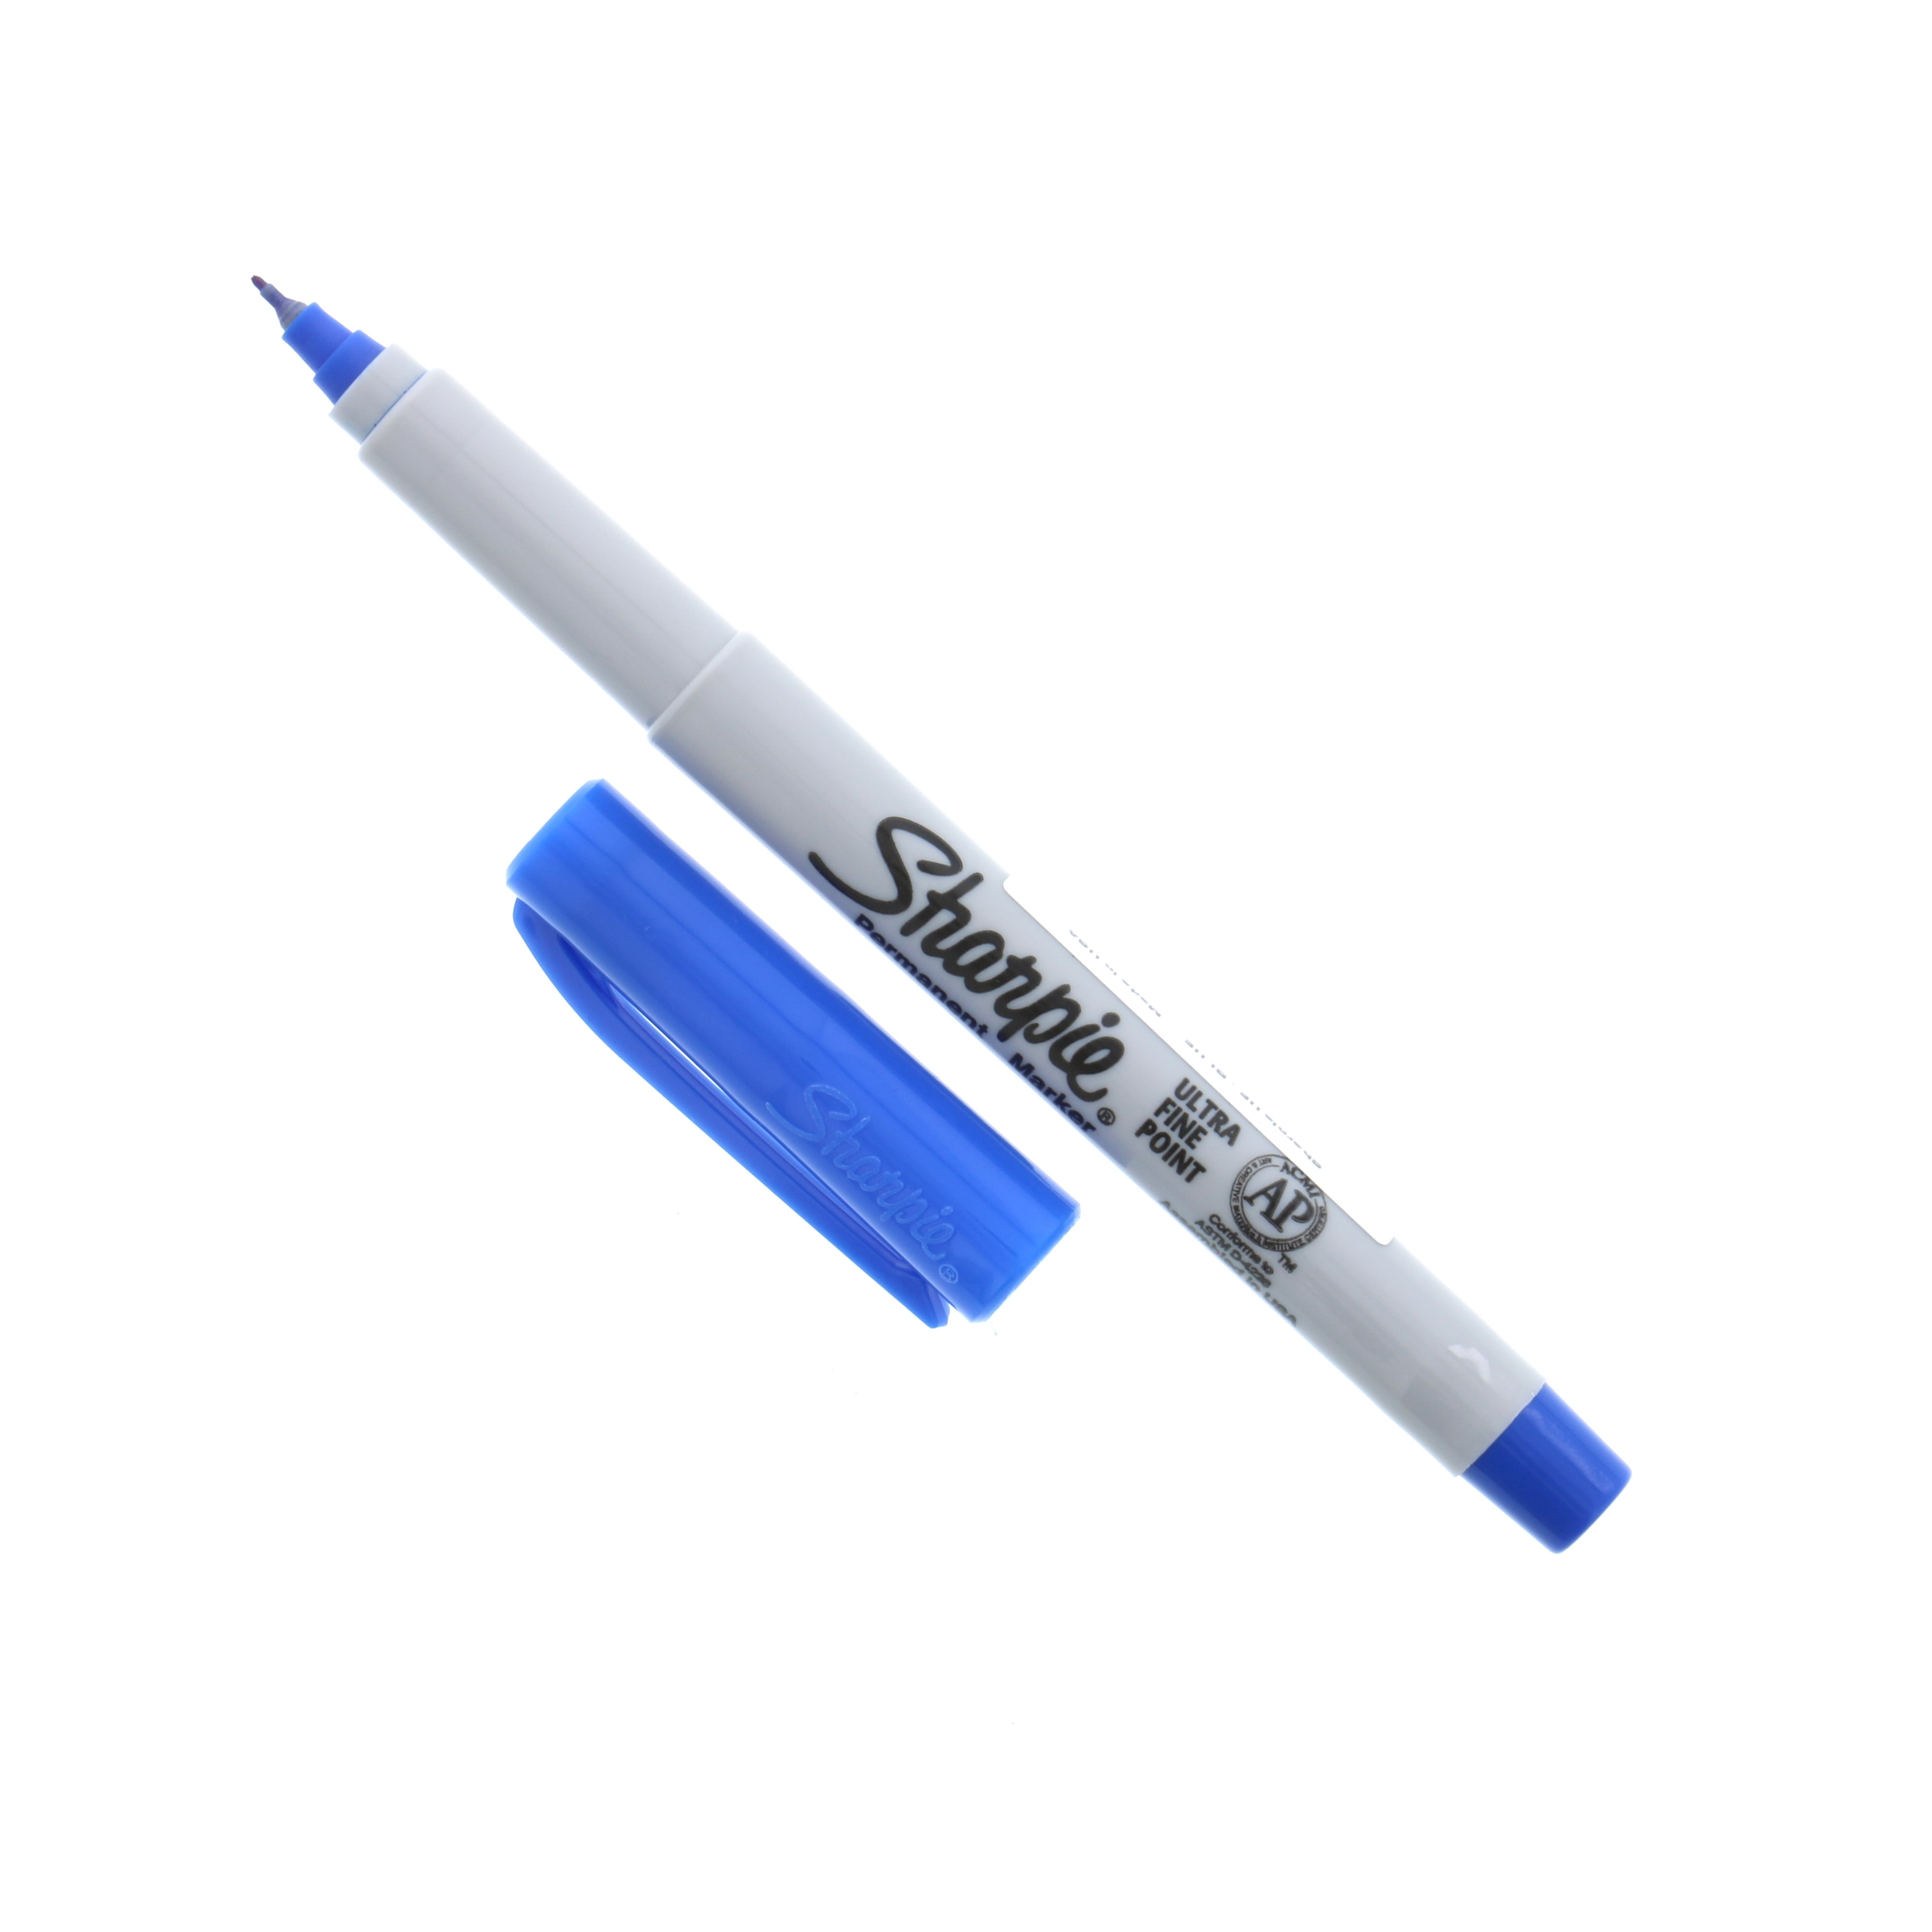 Sharpie Permanent Marker, Ultra Fine Tip, Blue, Dozen (37003)